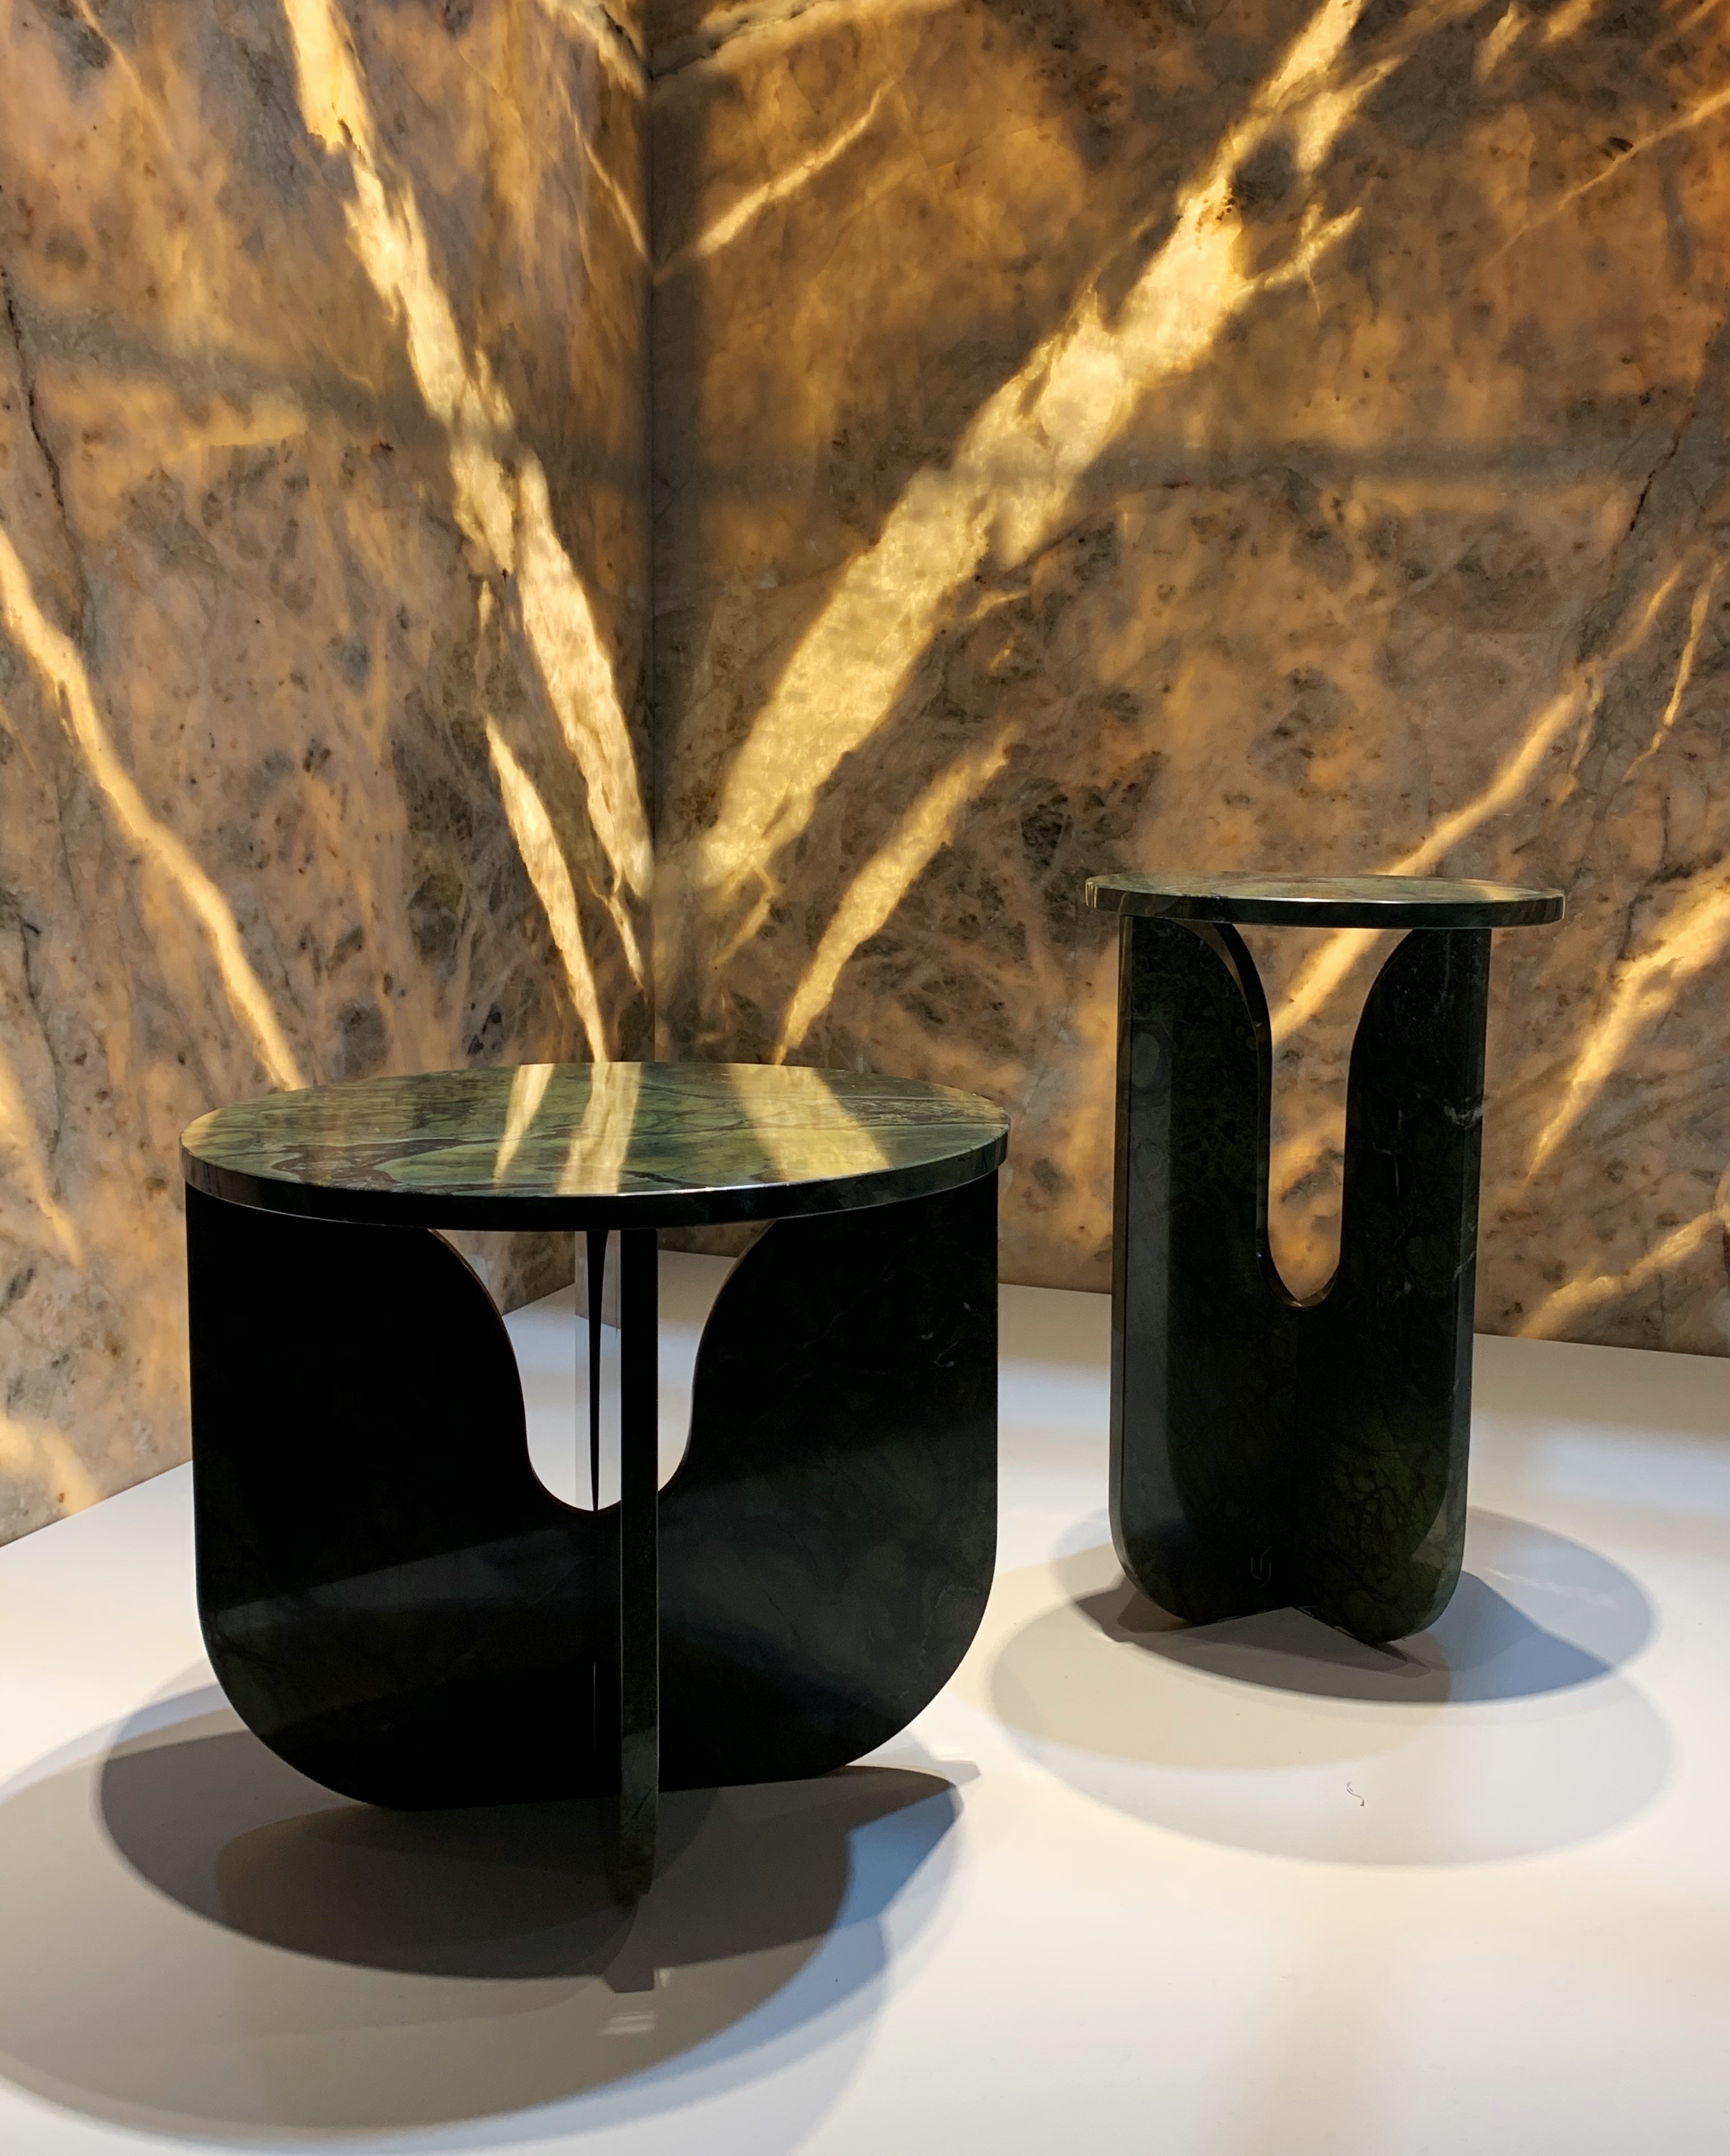 Mostra apresenta peças de design feitas com pedras naturais brasileiras (Foto: Mariana Conte)